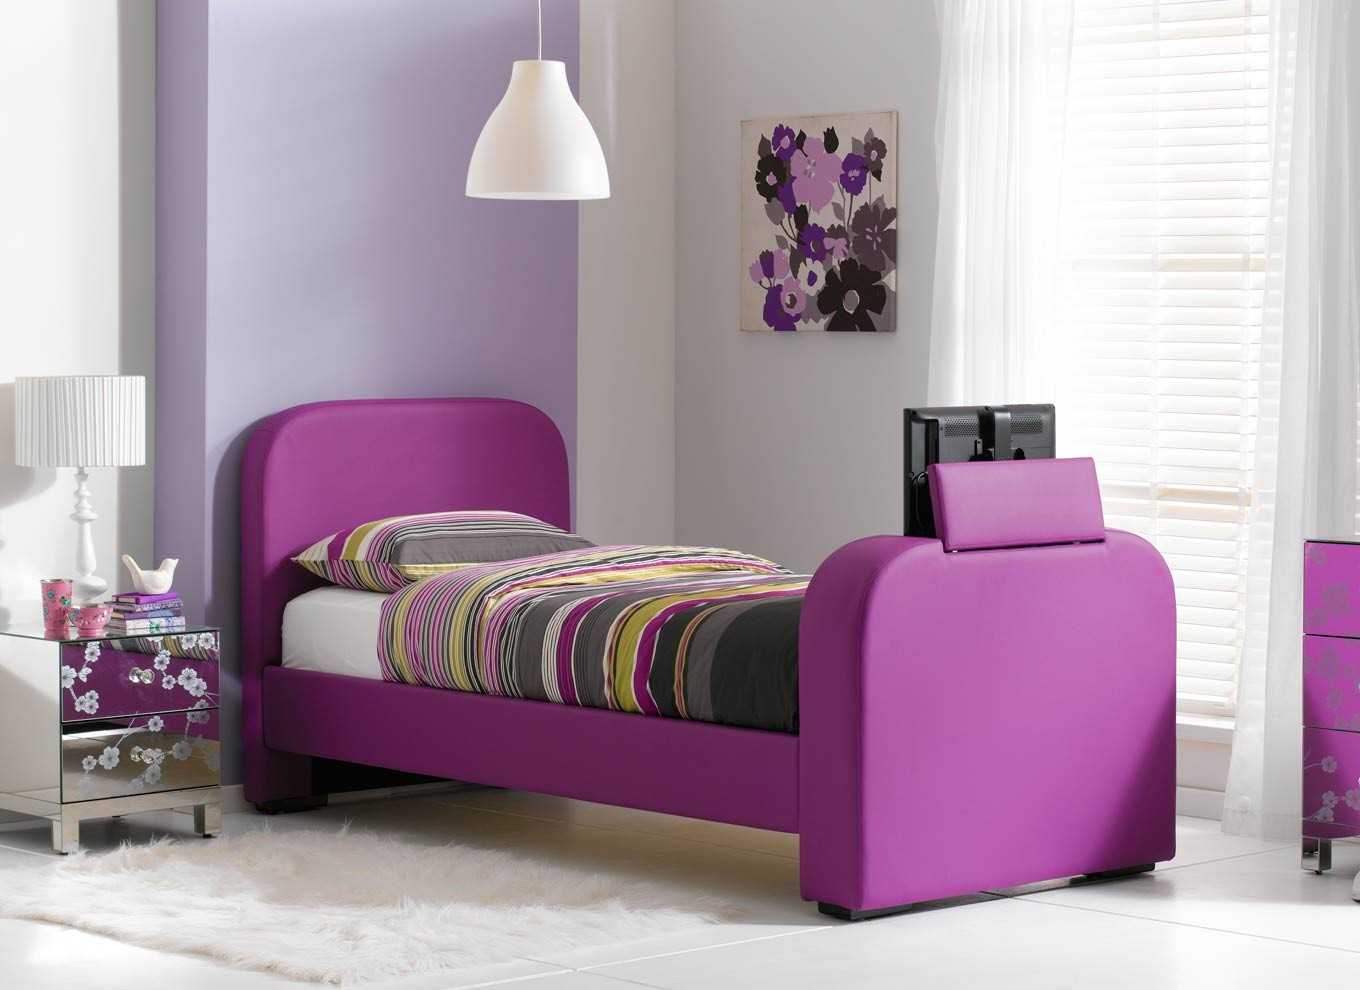 combinaison de couleur lilas dans le style de l'appartement